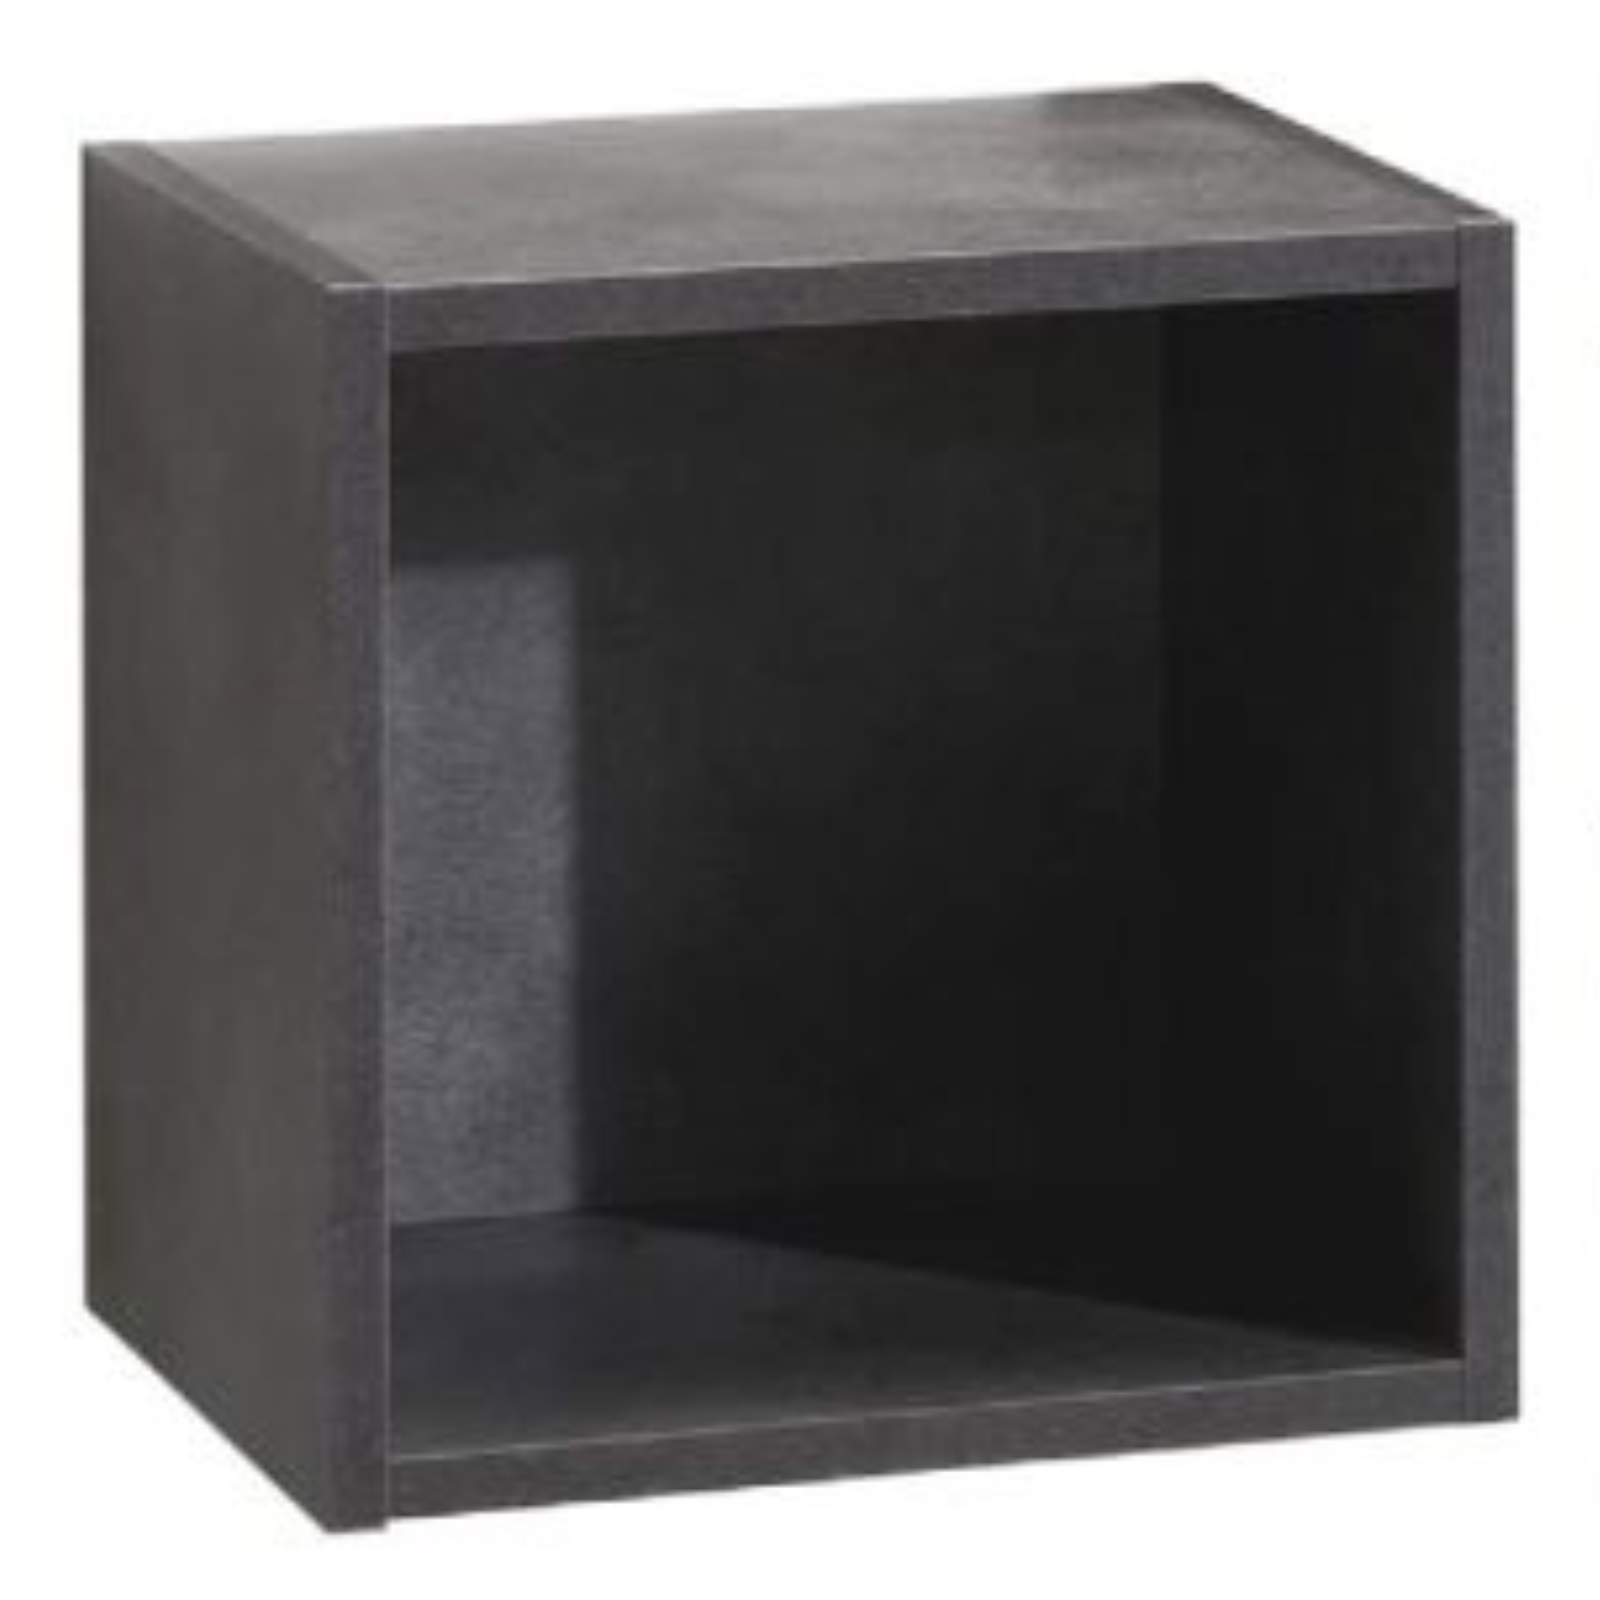 Pensile a giorno cubo set 3 pezzi in nobilitato truciolare rivestito effetto finitura legno cemento